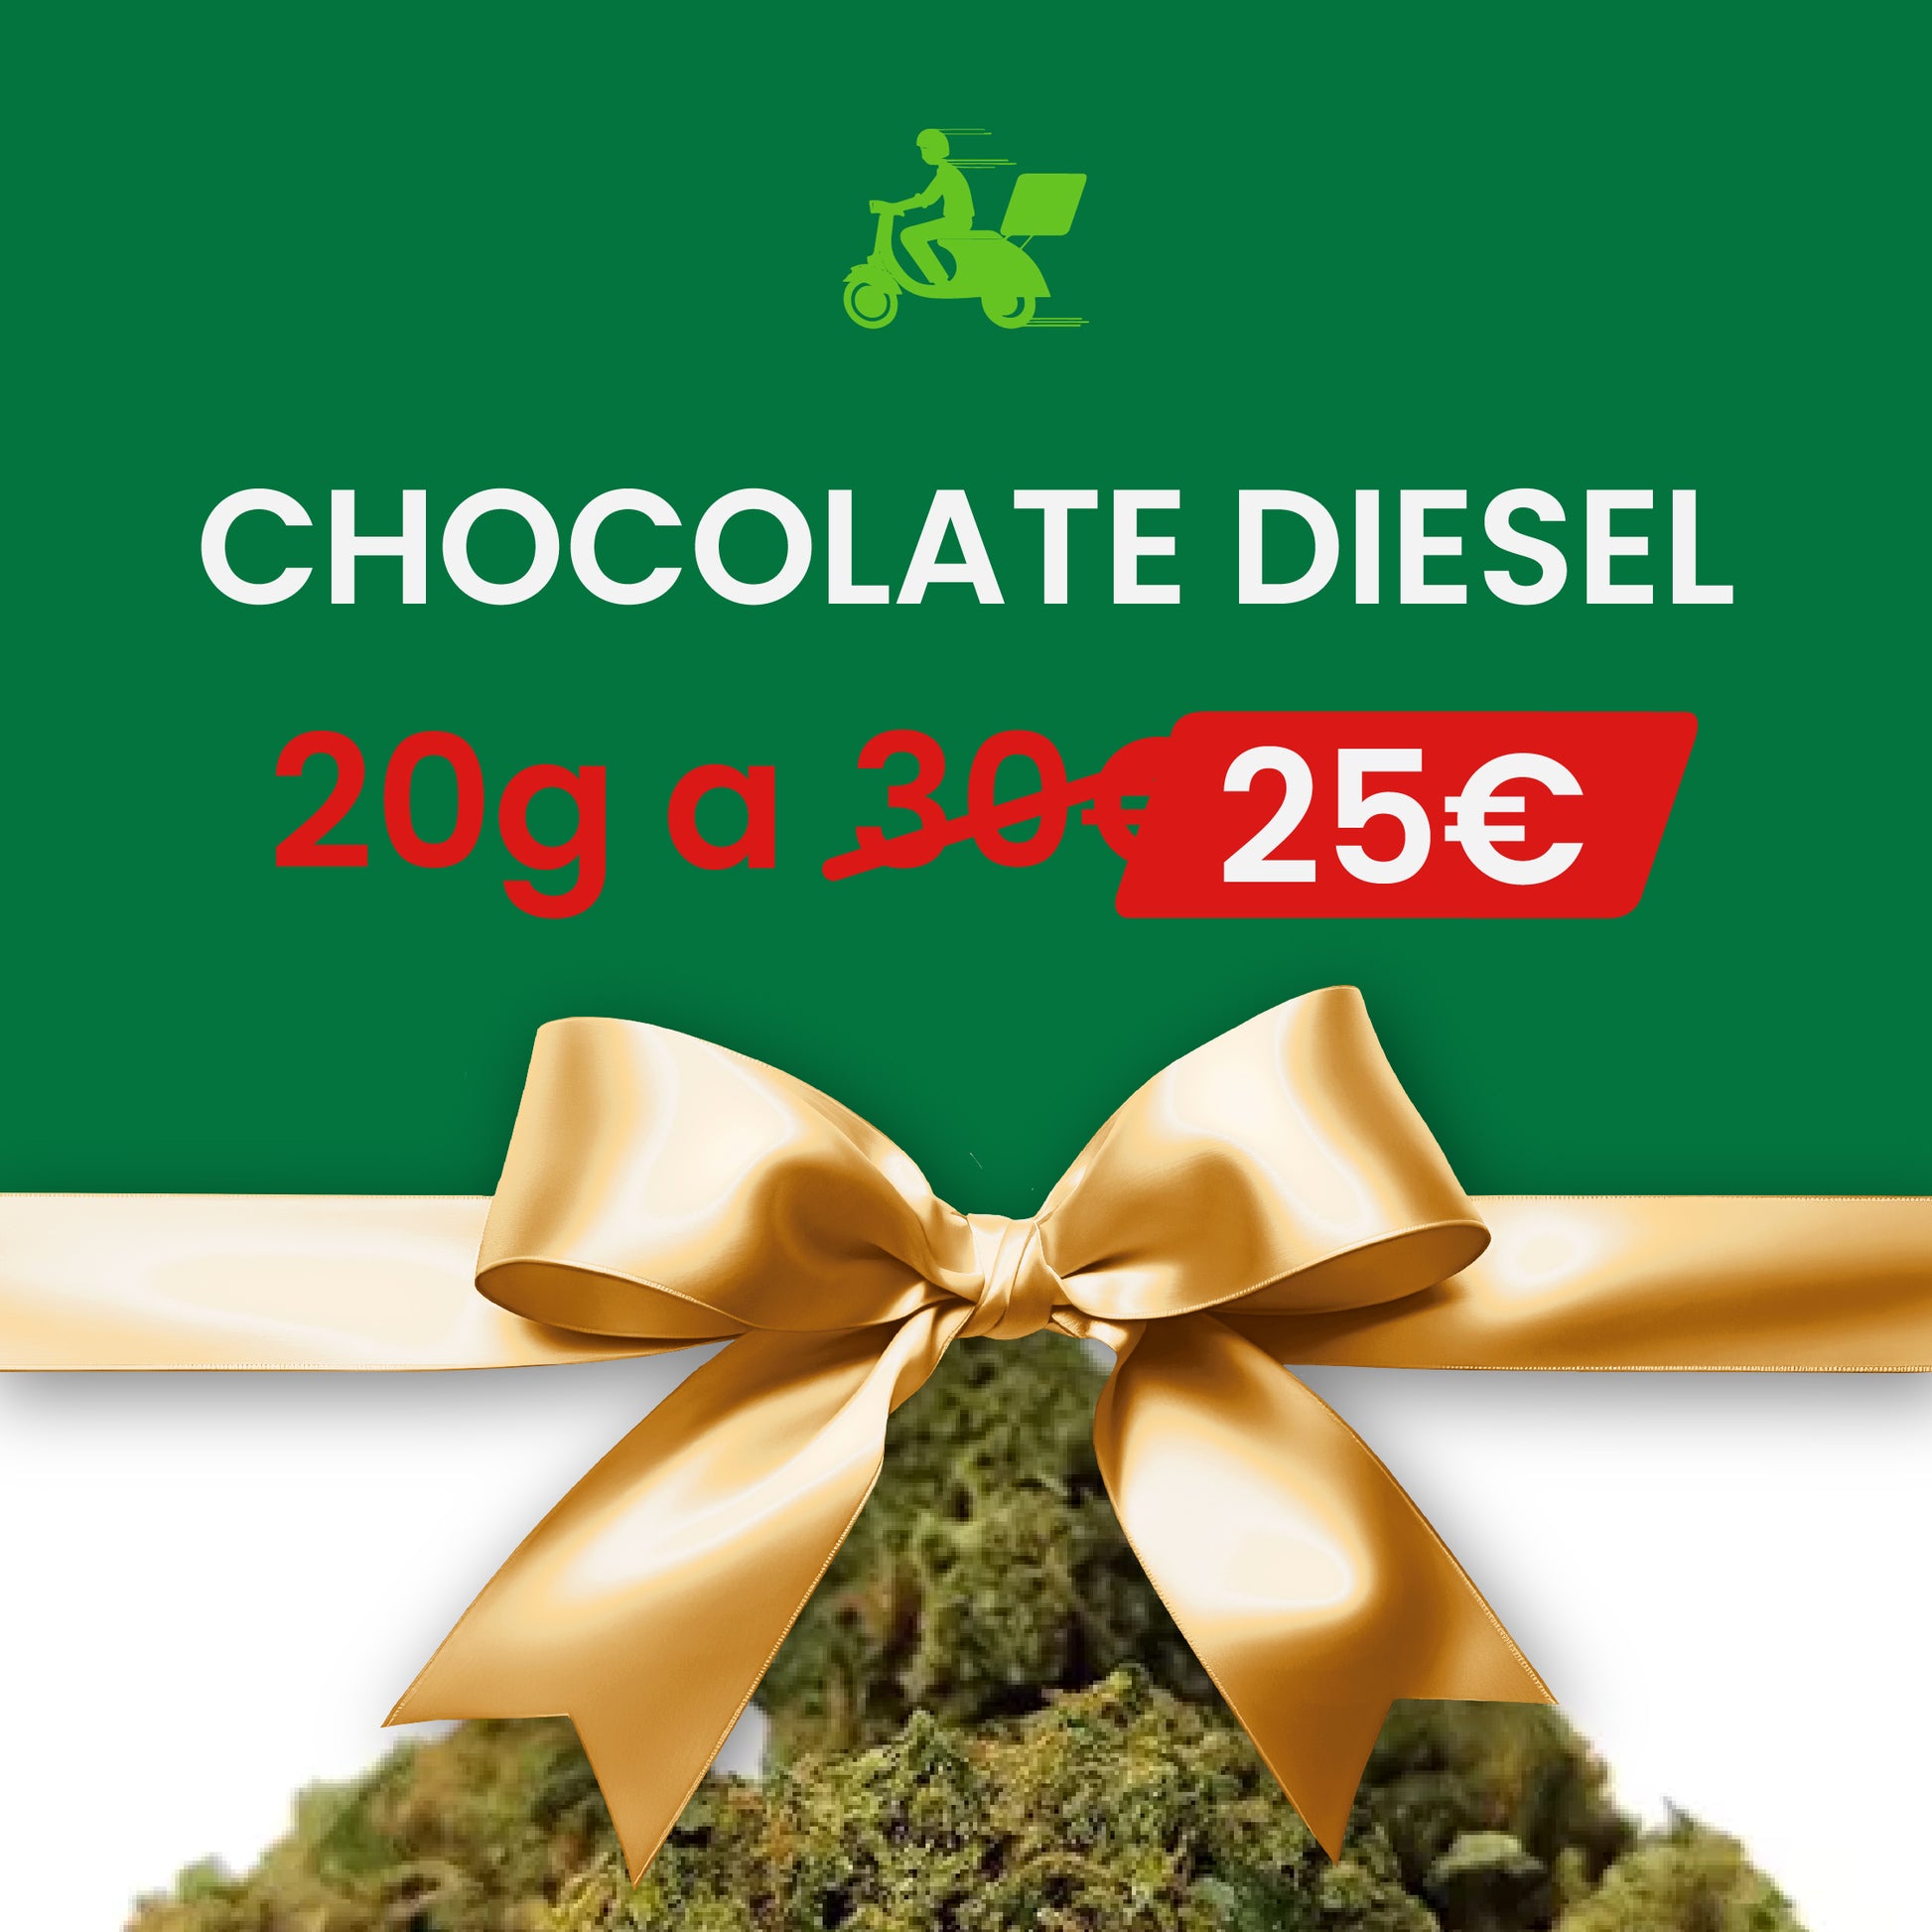 Oferta Navidad Chocolate Diesel